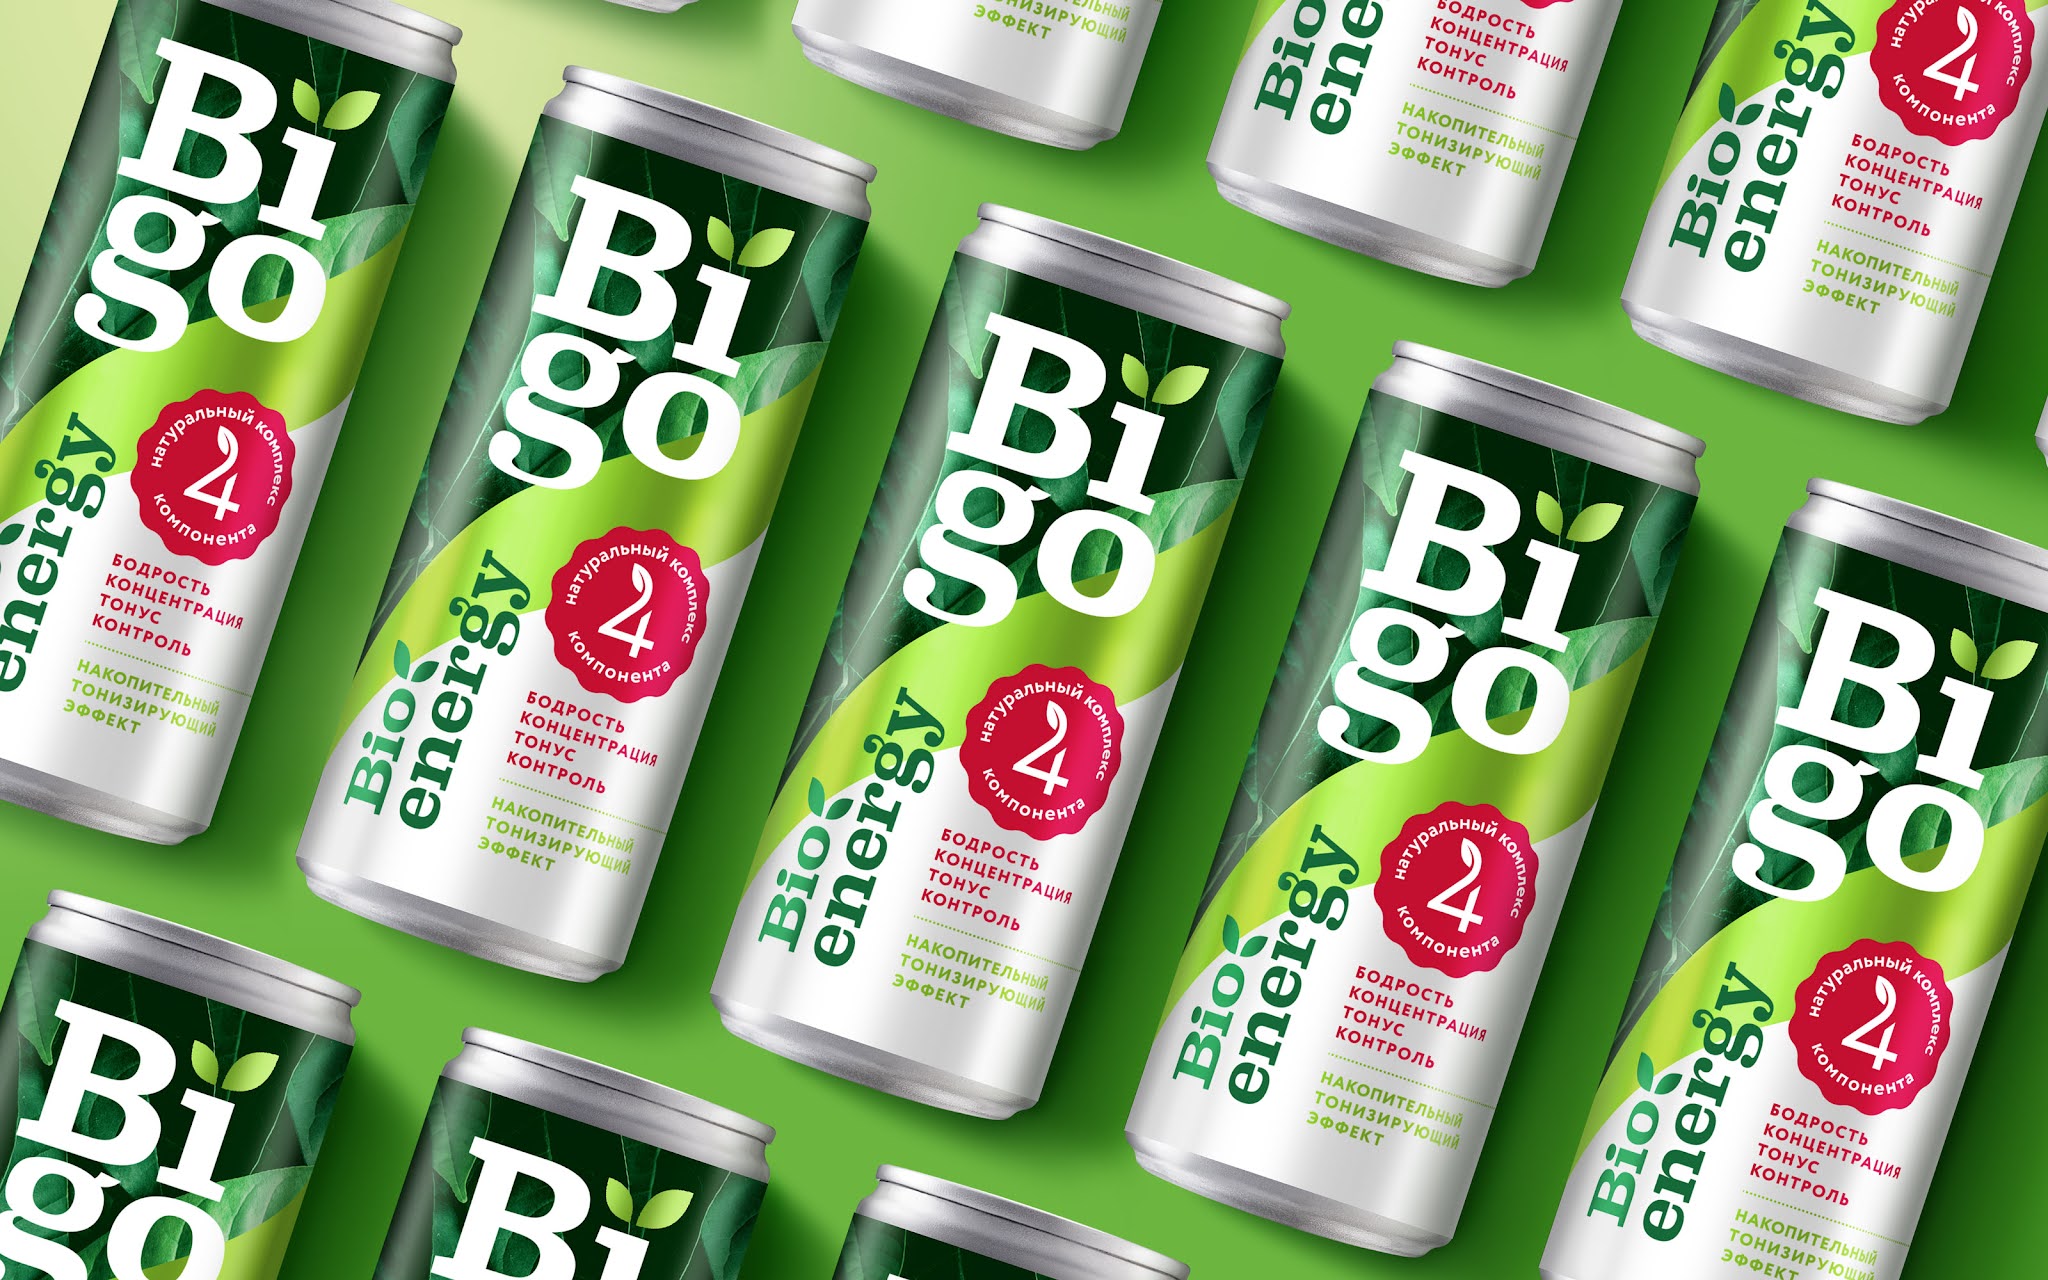 bigo纯天然功能饮料包装设计活力绿色白色版式